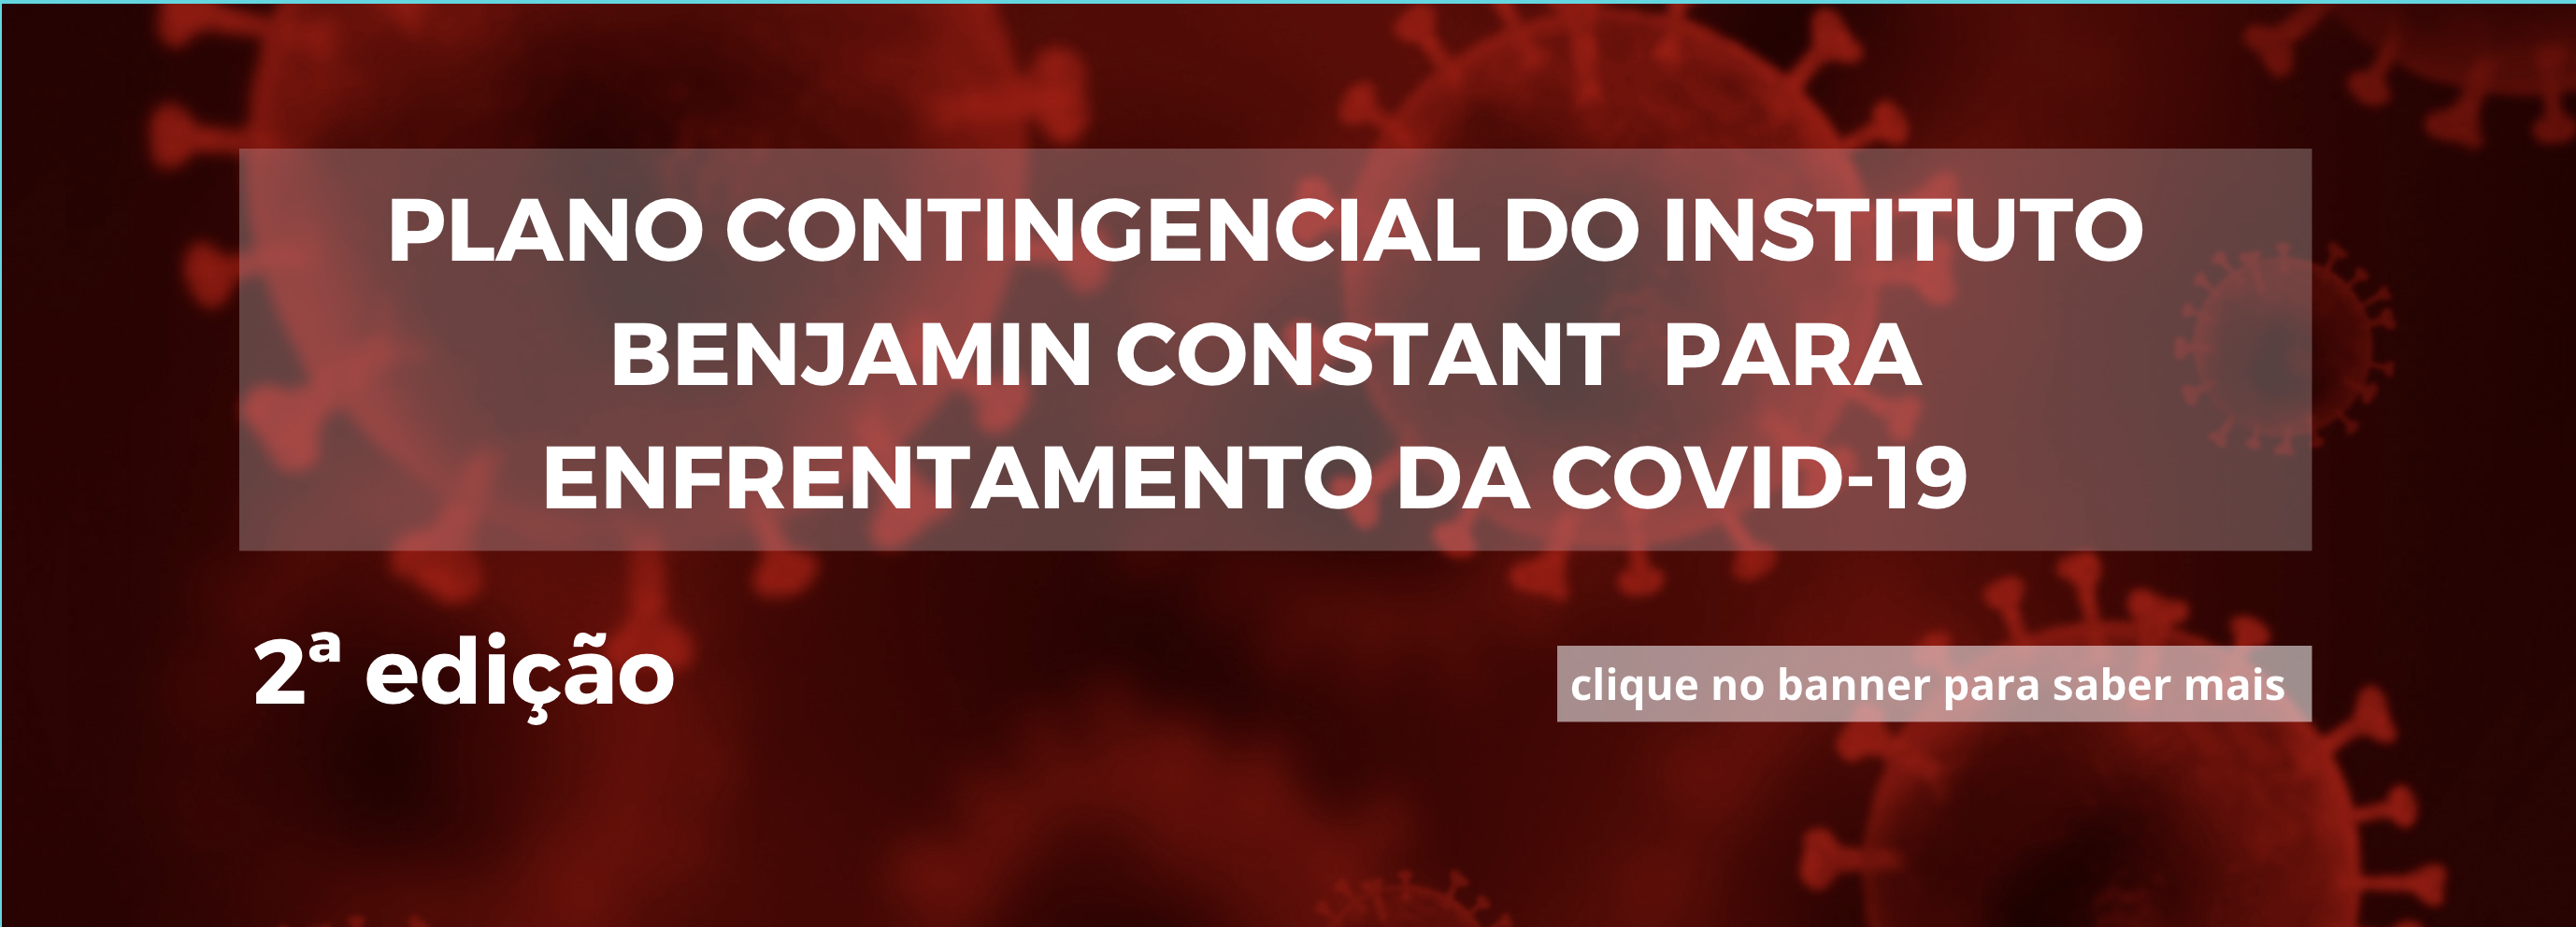 Descrição: cartaz tendo como fundo uma ilustração do coronavírus na cor vermelha.  Ao centro, em letras brancas, lê-se: Plano Contingencial do IBC para Enfrentamento da Covid-19